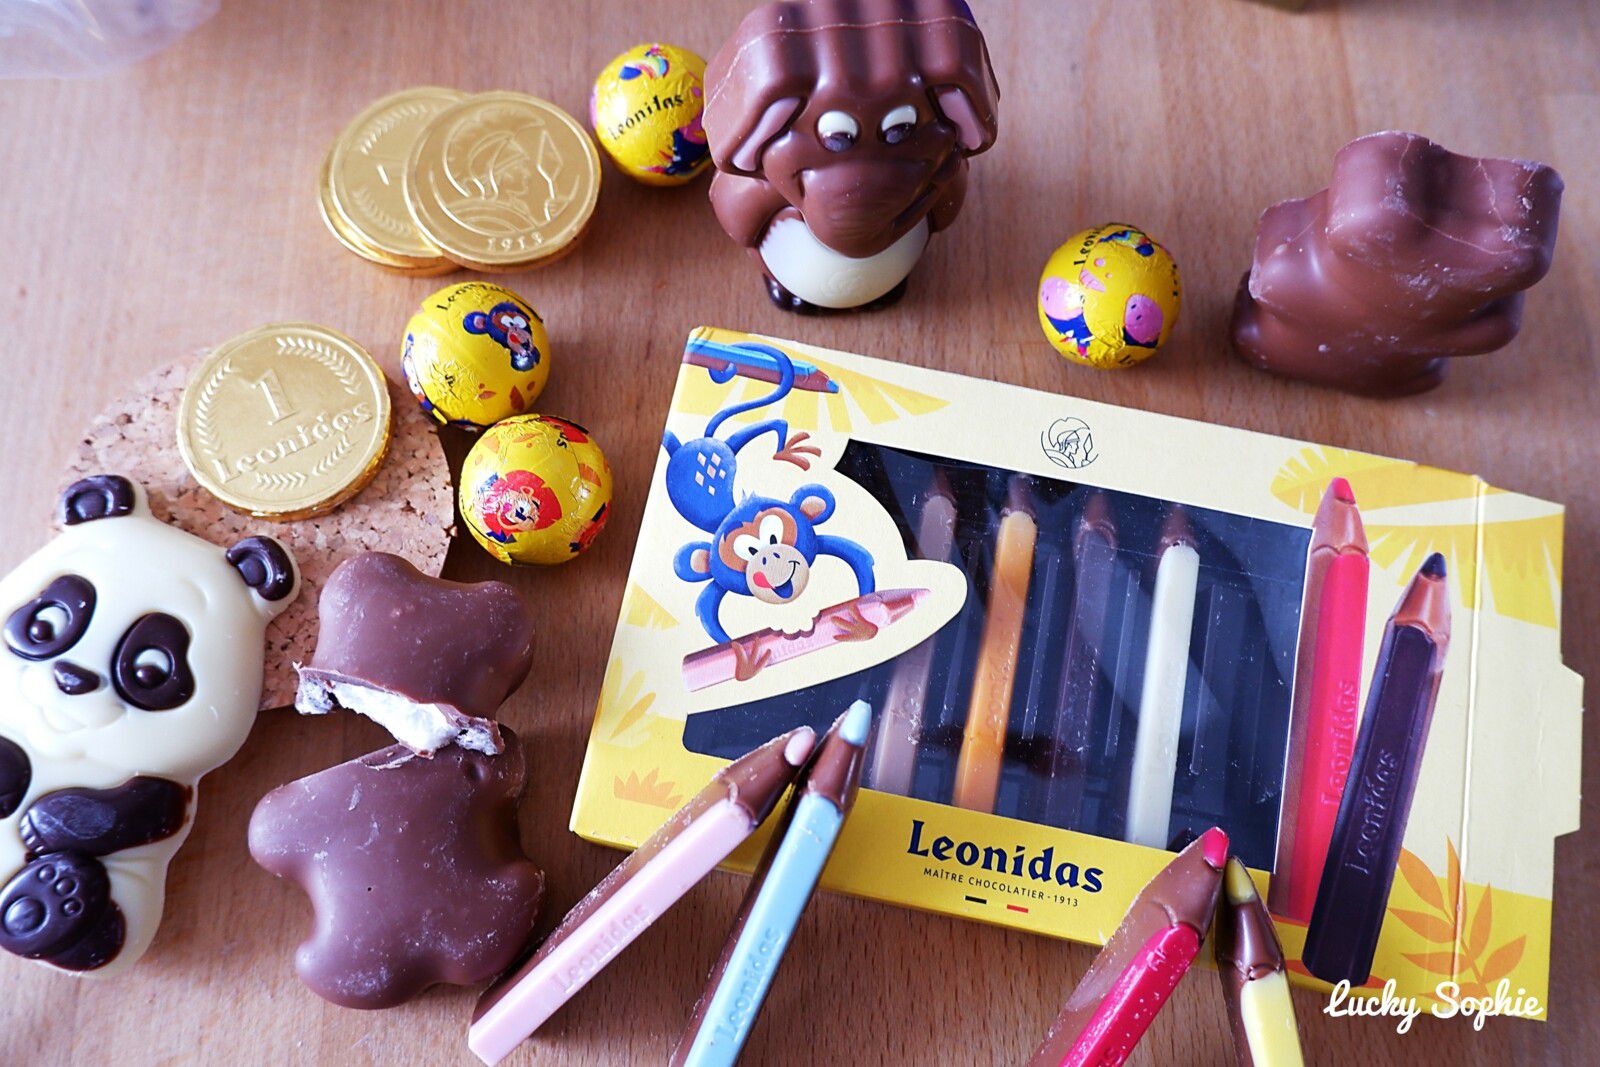 Les chocolats Leonidas pour les enfants ! - Lucky Sophie blog